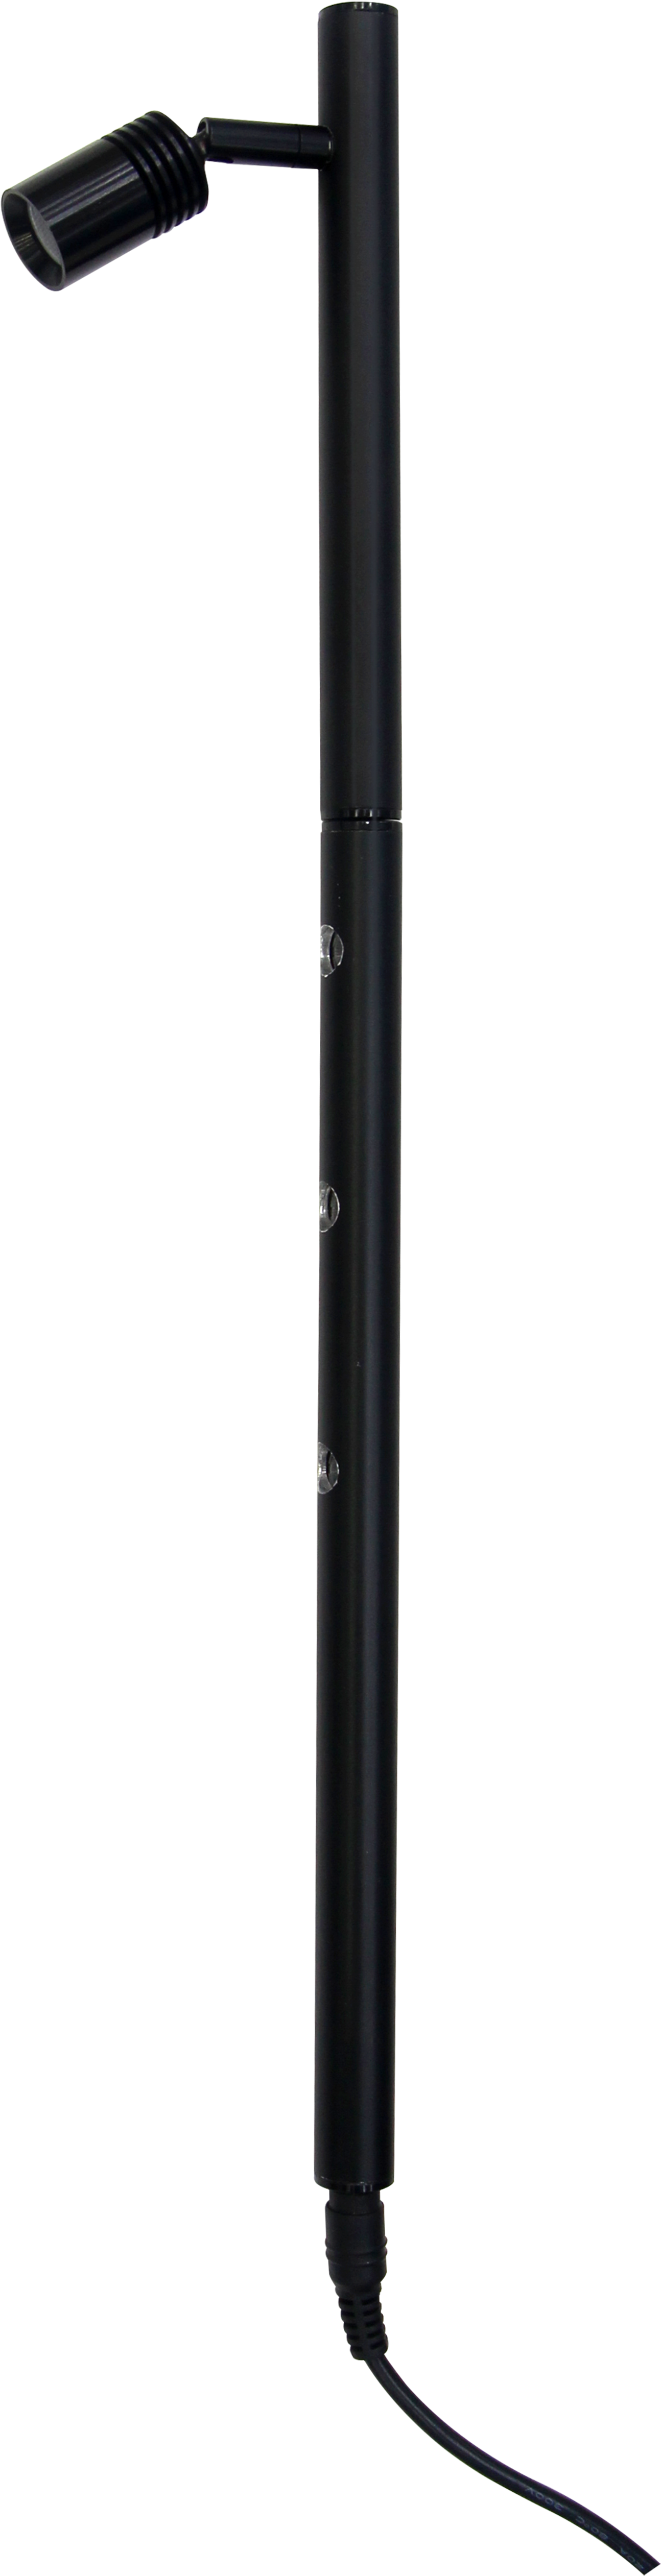 Brightness Showcase Jewelry Led Light Pole - Light-emitting Diode (2500x5510)